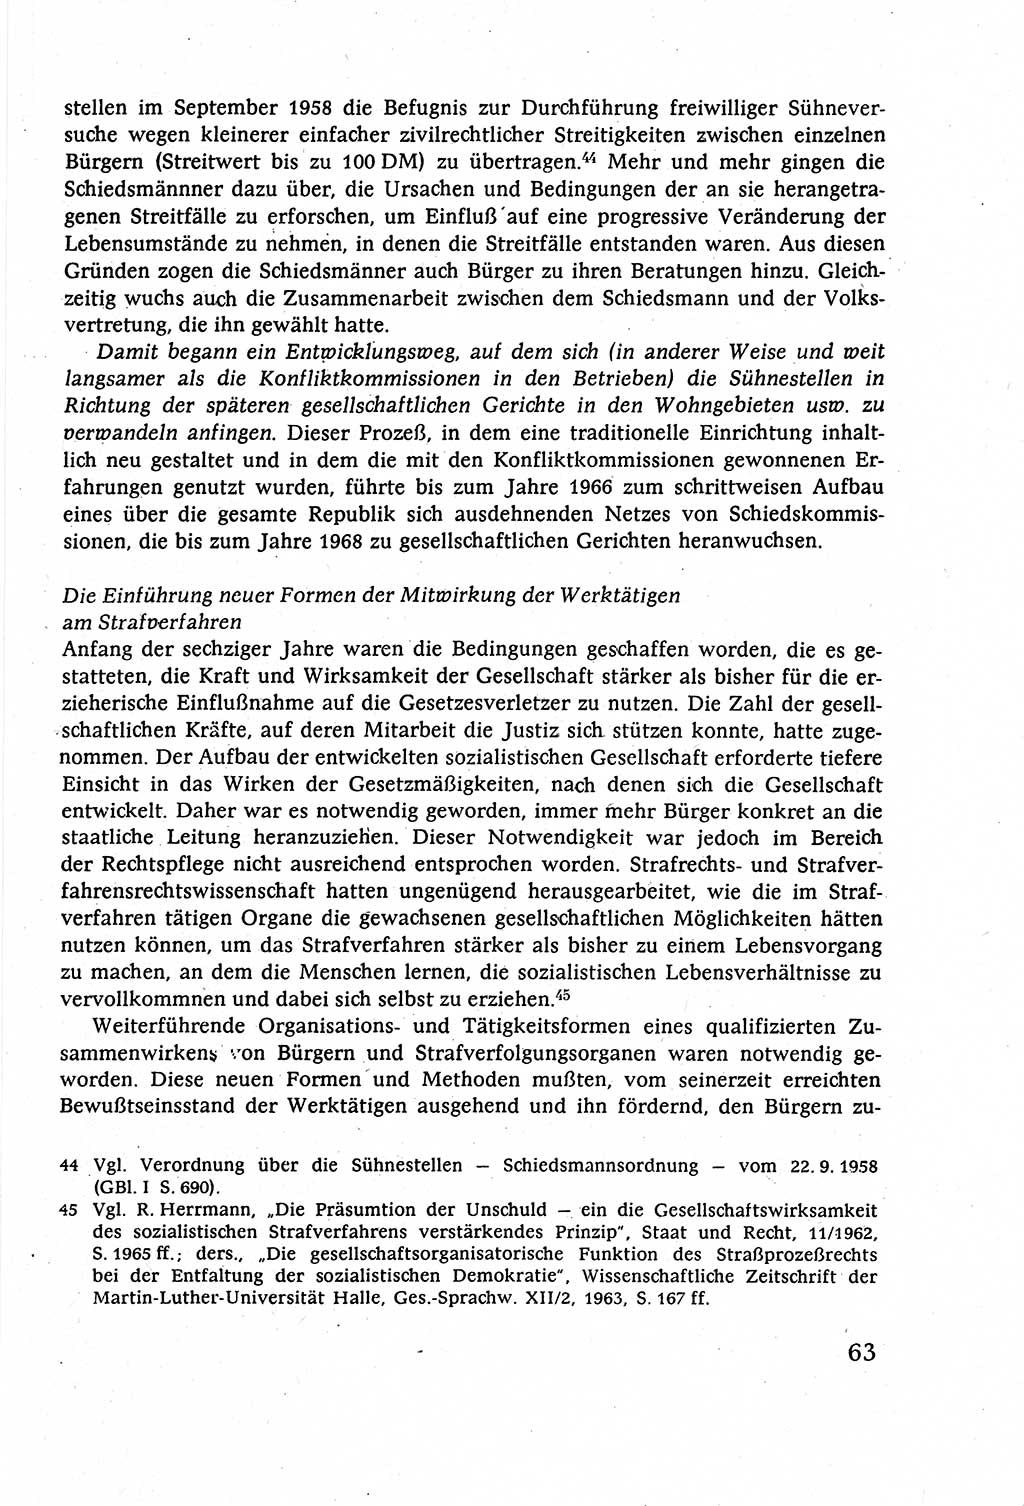 Strafverfahrensrecht [Deutsche Demokratische Republik (DDR)], Lehrbuch 1977, Seite 63 (Strafverf.-R. DDR Lb. 1977, S. 63)